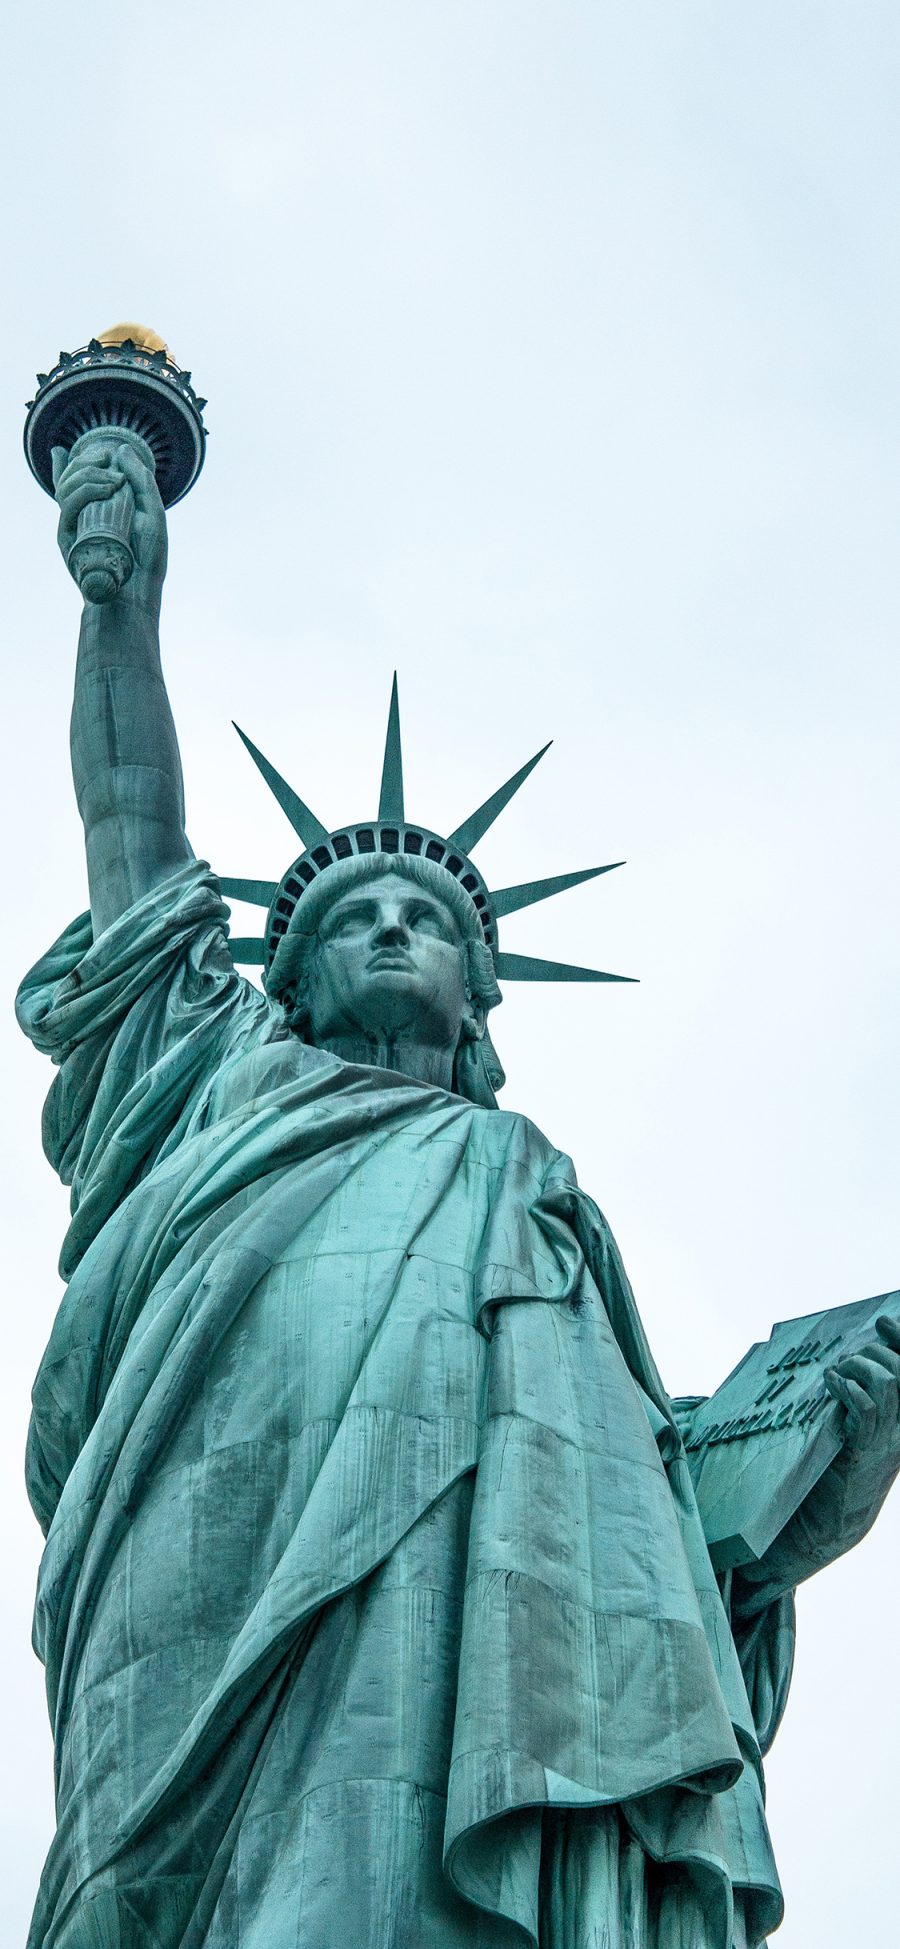 [2436×1125]自由女神像 美国 雕塑 天空 苹果手机壁纸图片